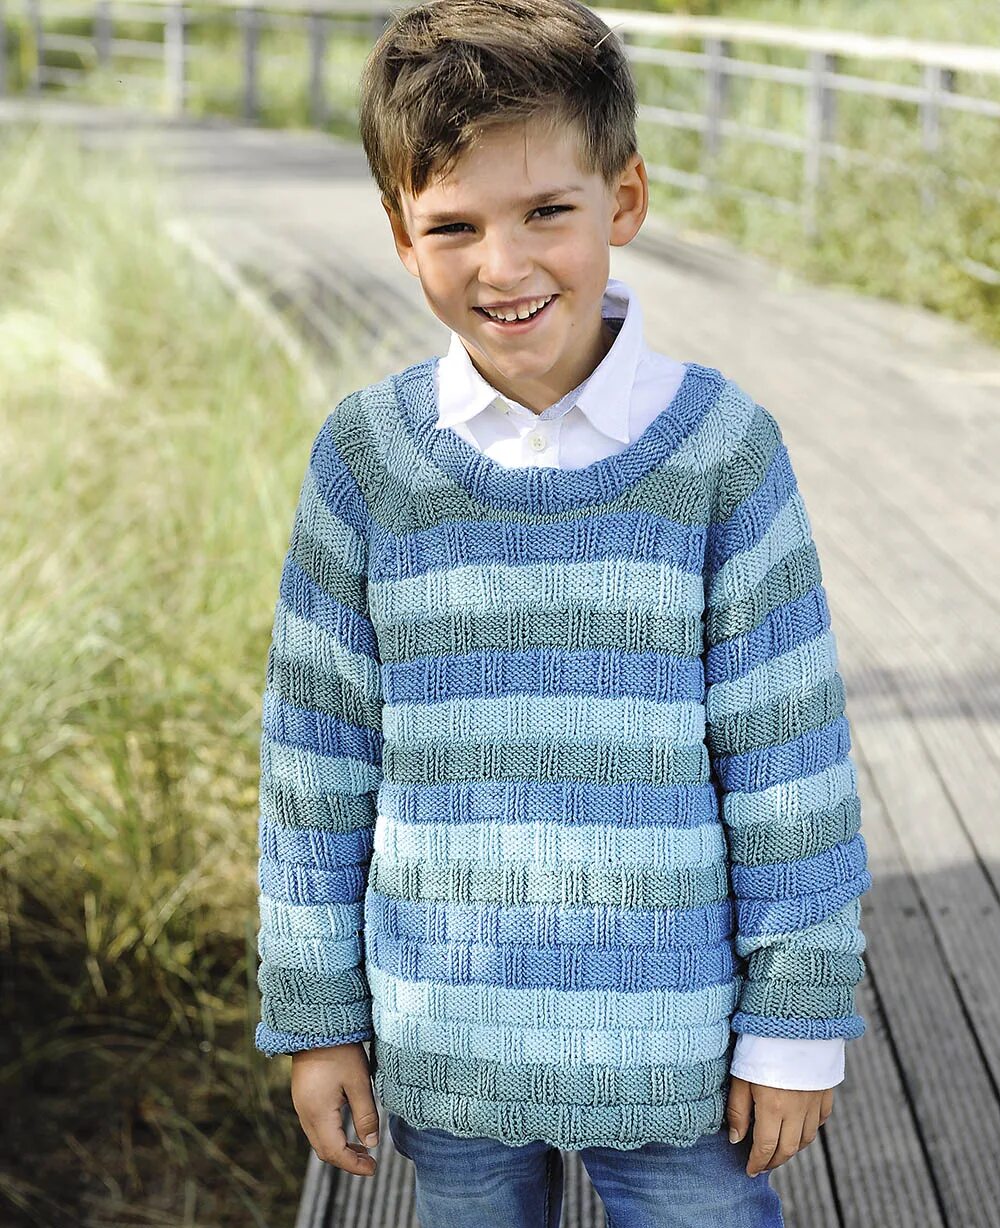 Джемпер для мальчика. Свитер для мальчика. Вязаный свитер для мальчика. Вязаный джемпер для мальчика. Вязание мальчикам 4 года